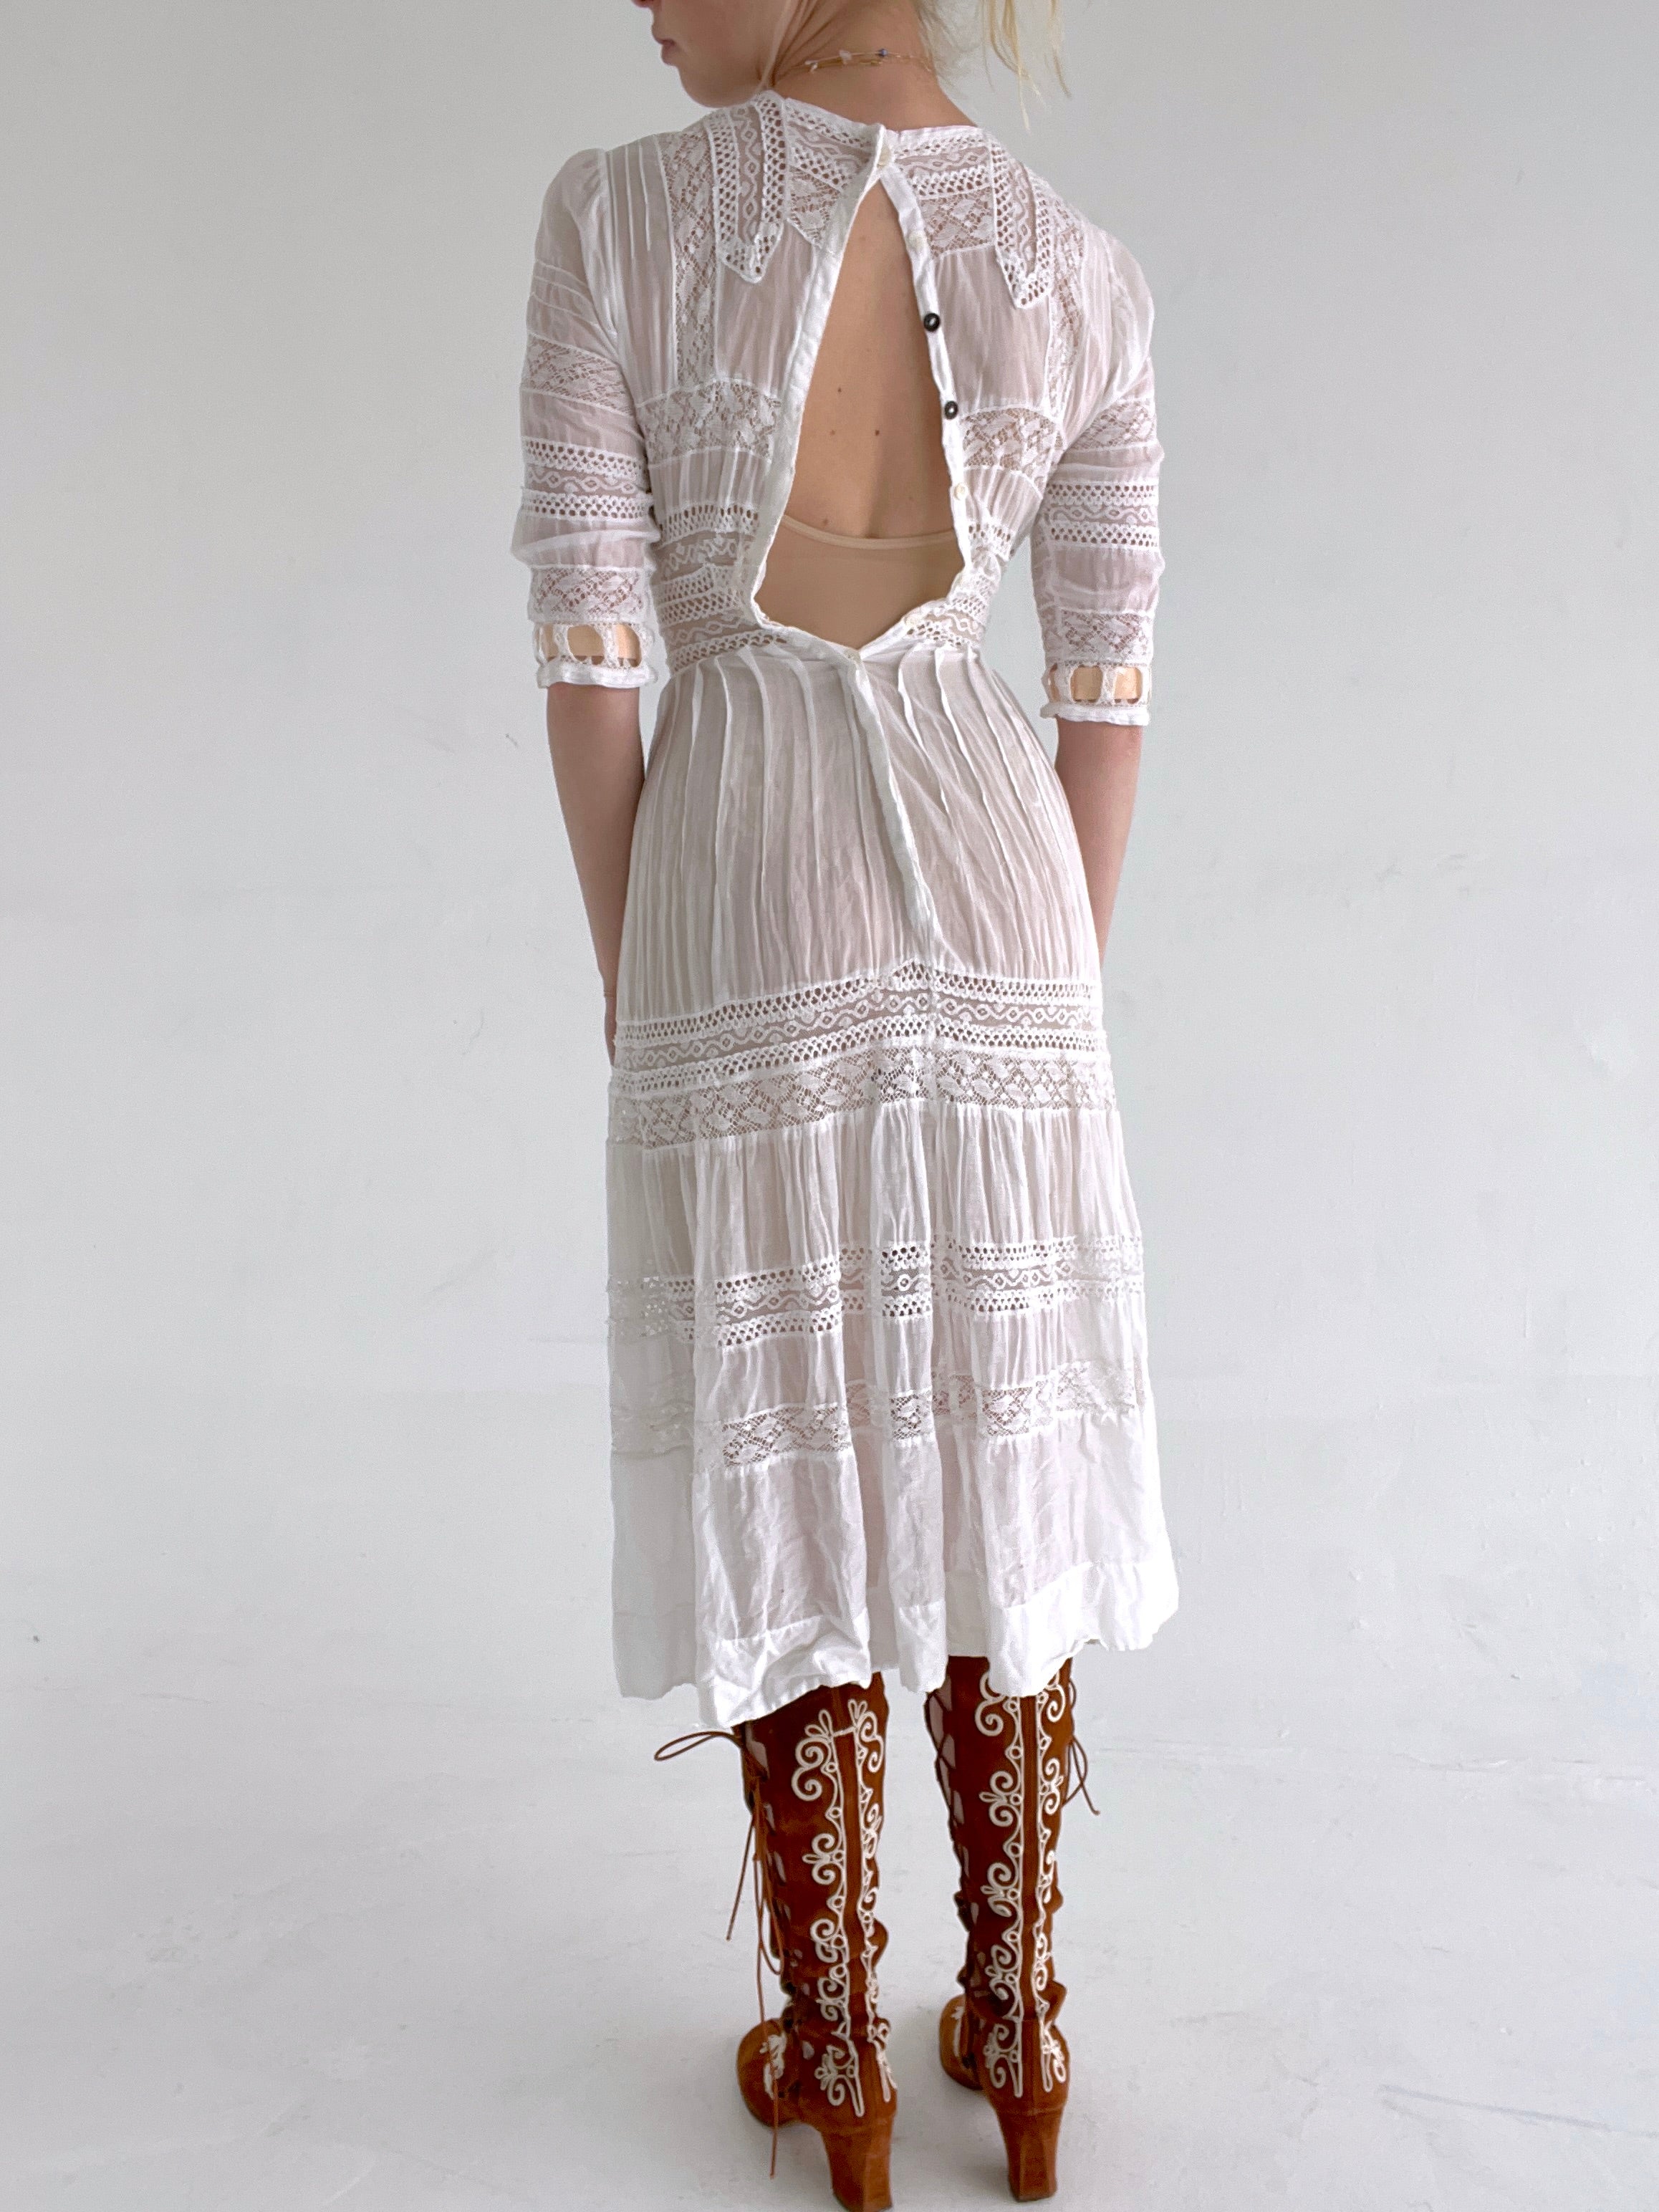 Edwardian 3/4 Sleeve White Cotton Lace Lawn Dress